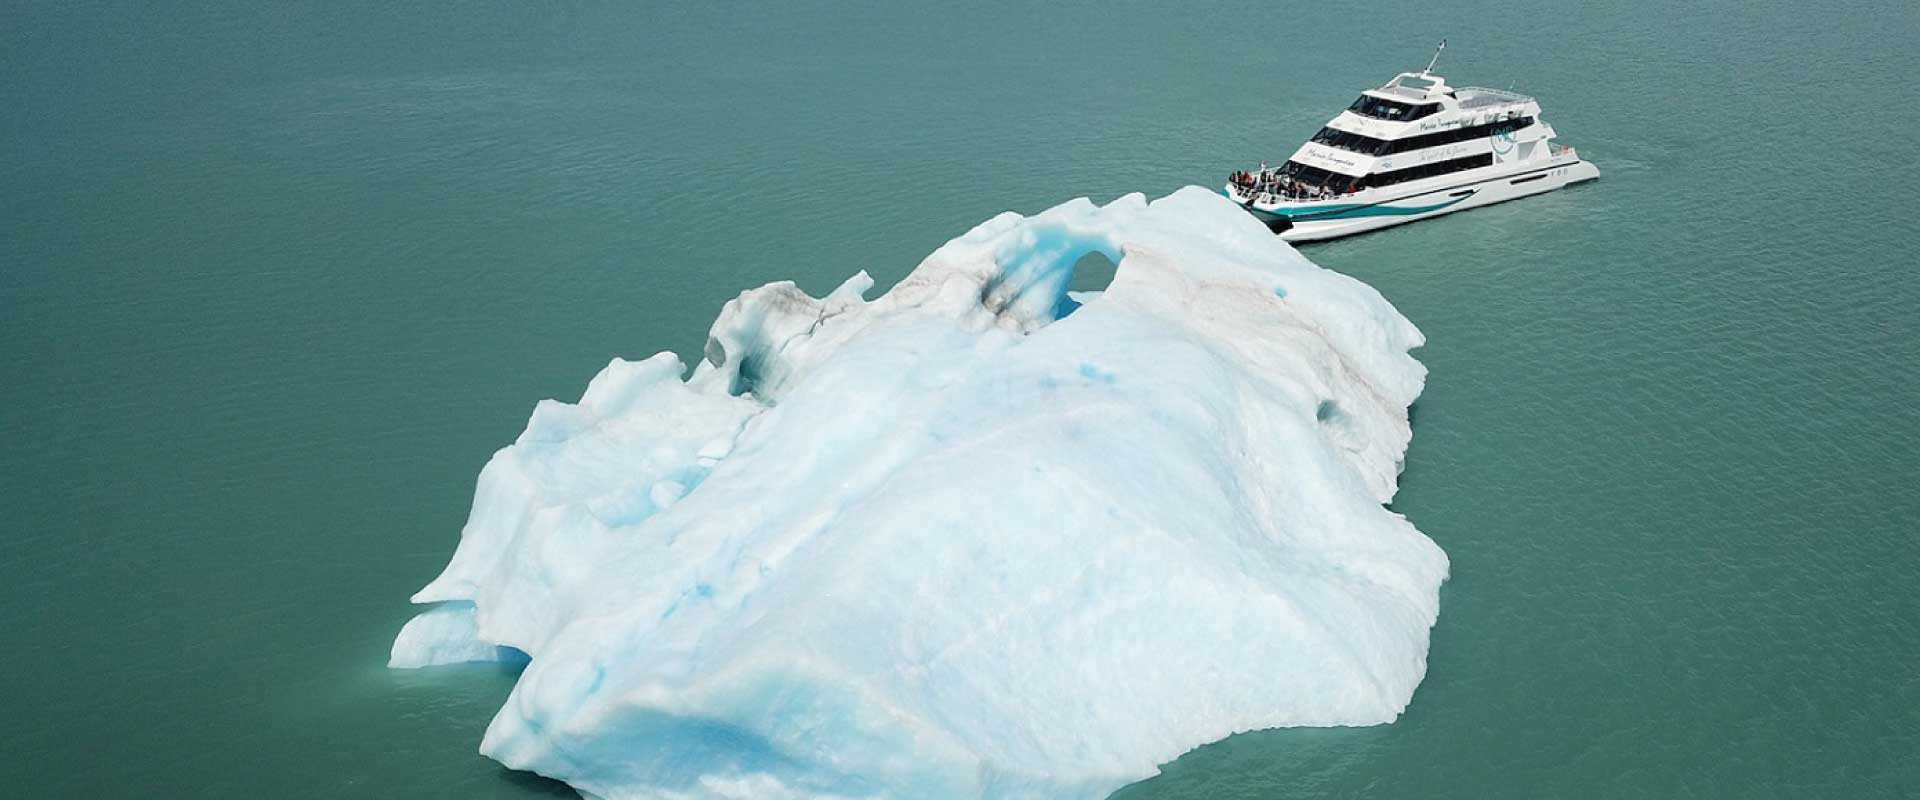 glaciares gourmet navegacion catamaran